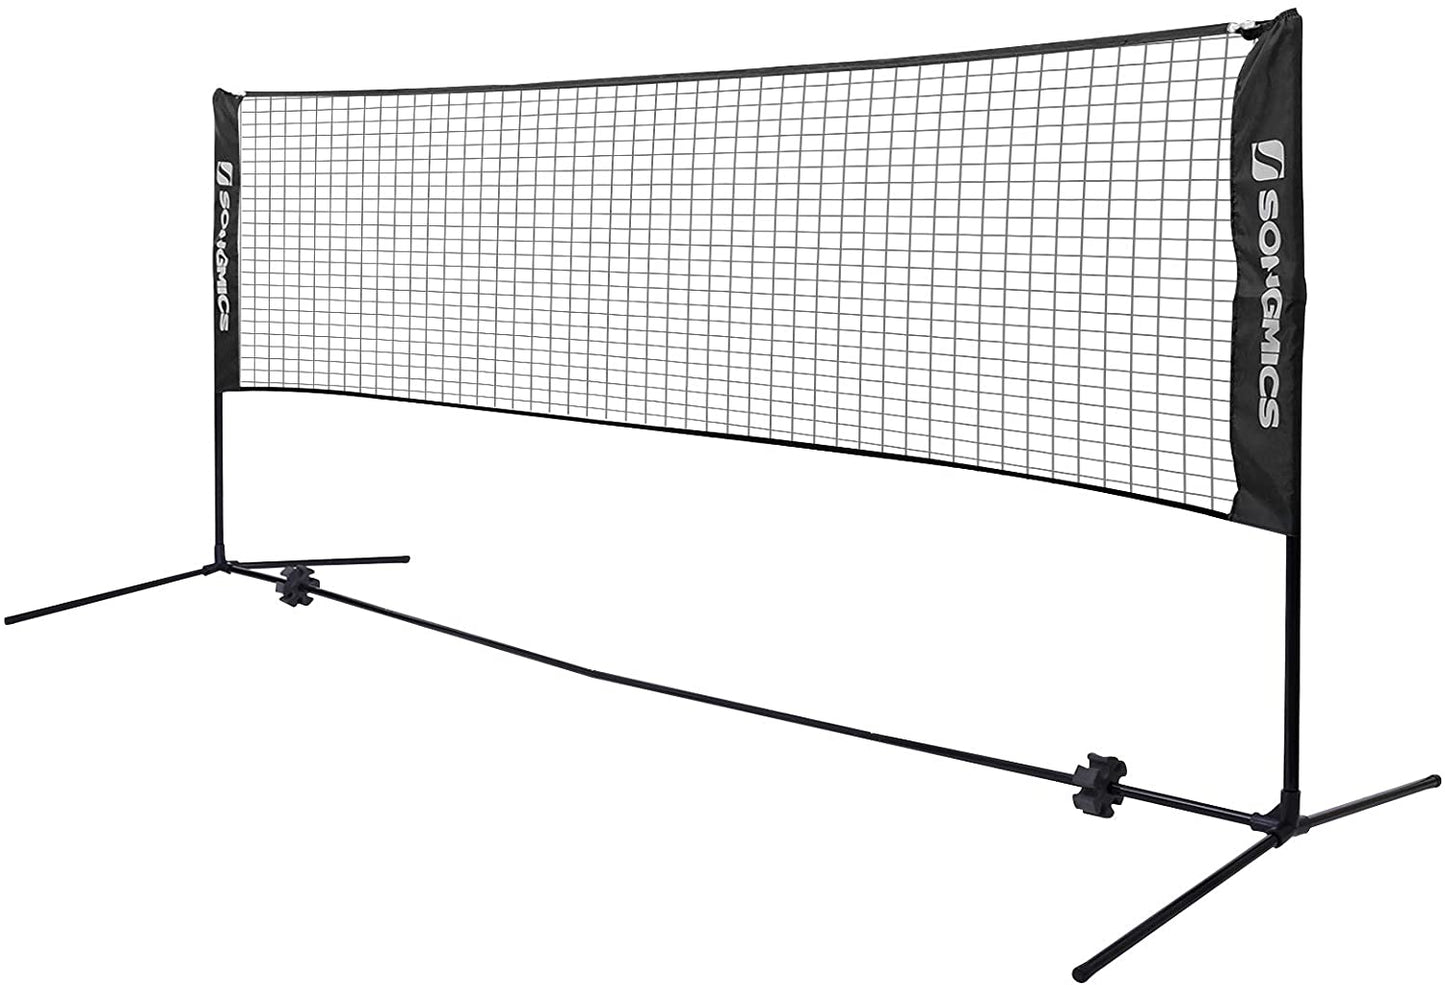 Filet de badminton Nancy's Fullarton - Filet de tennis - Hauteur réglable - Cadre en fer - Sac de transport - Bleu - Noir - Jaune